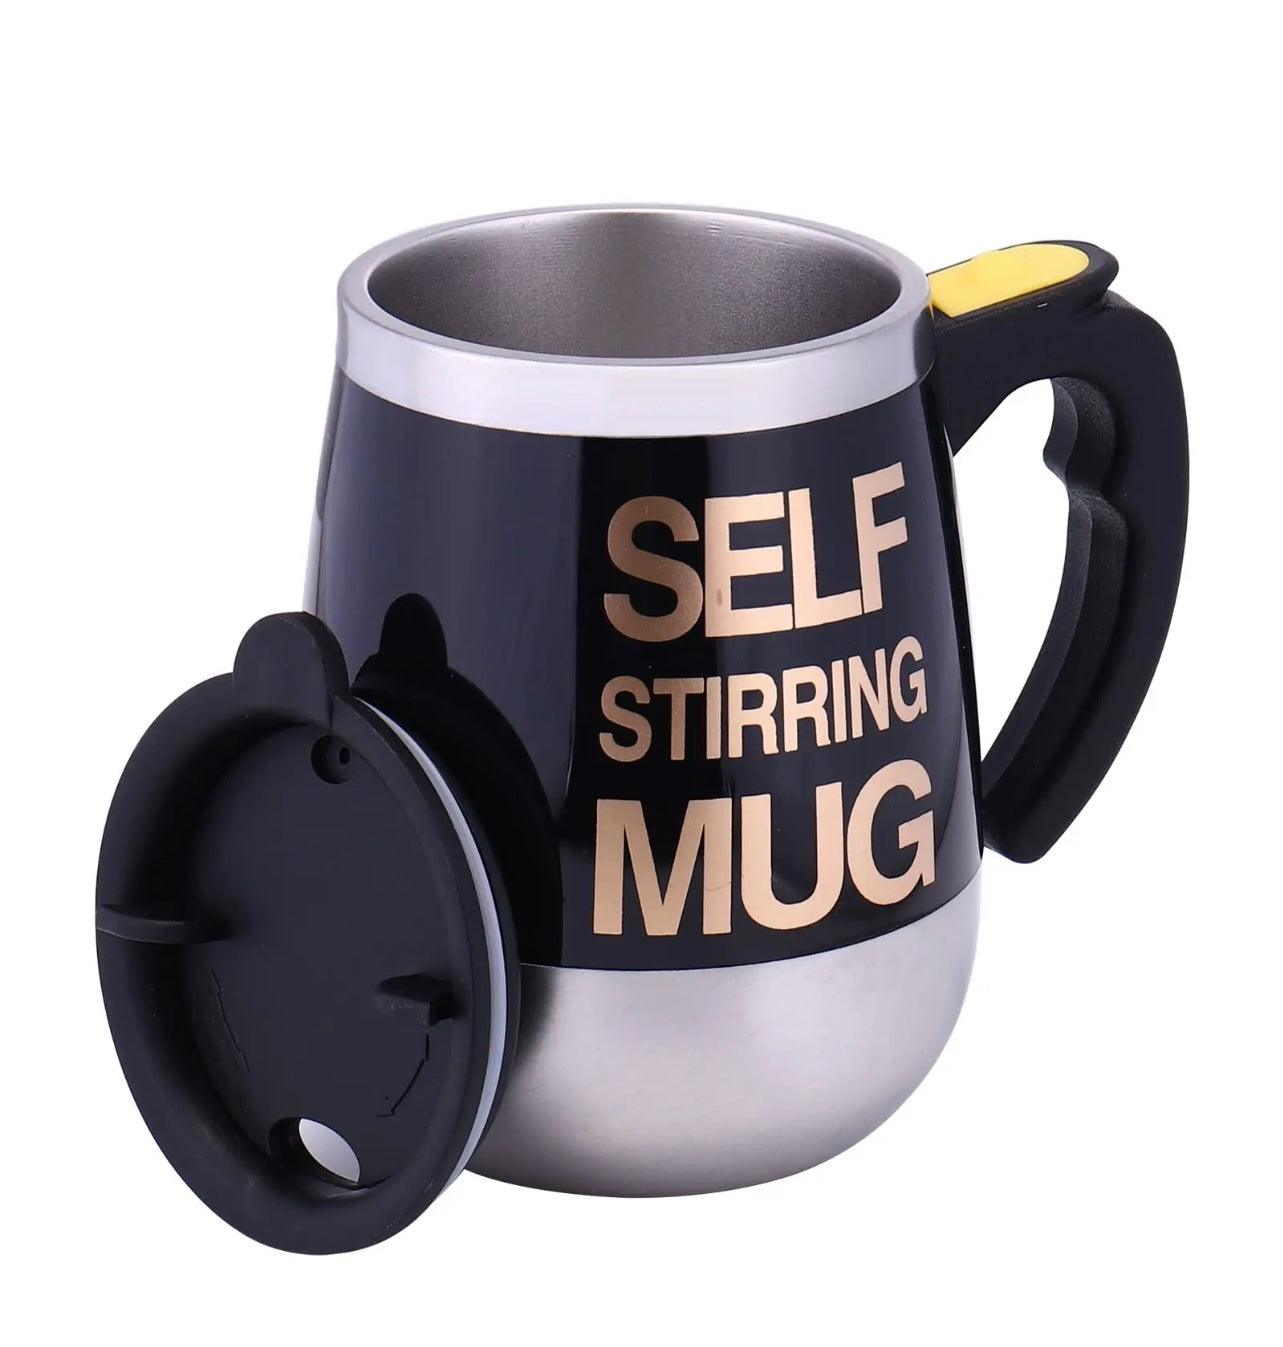 Self Stiring Mug - Expat Life Style